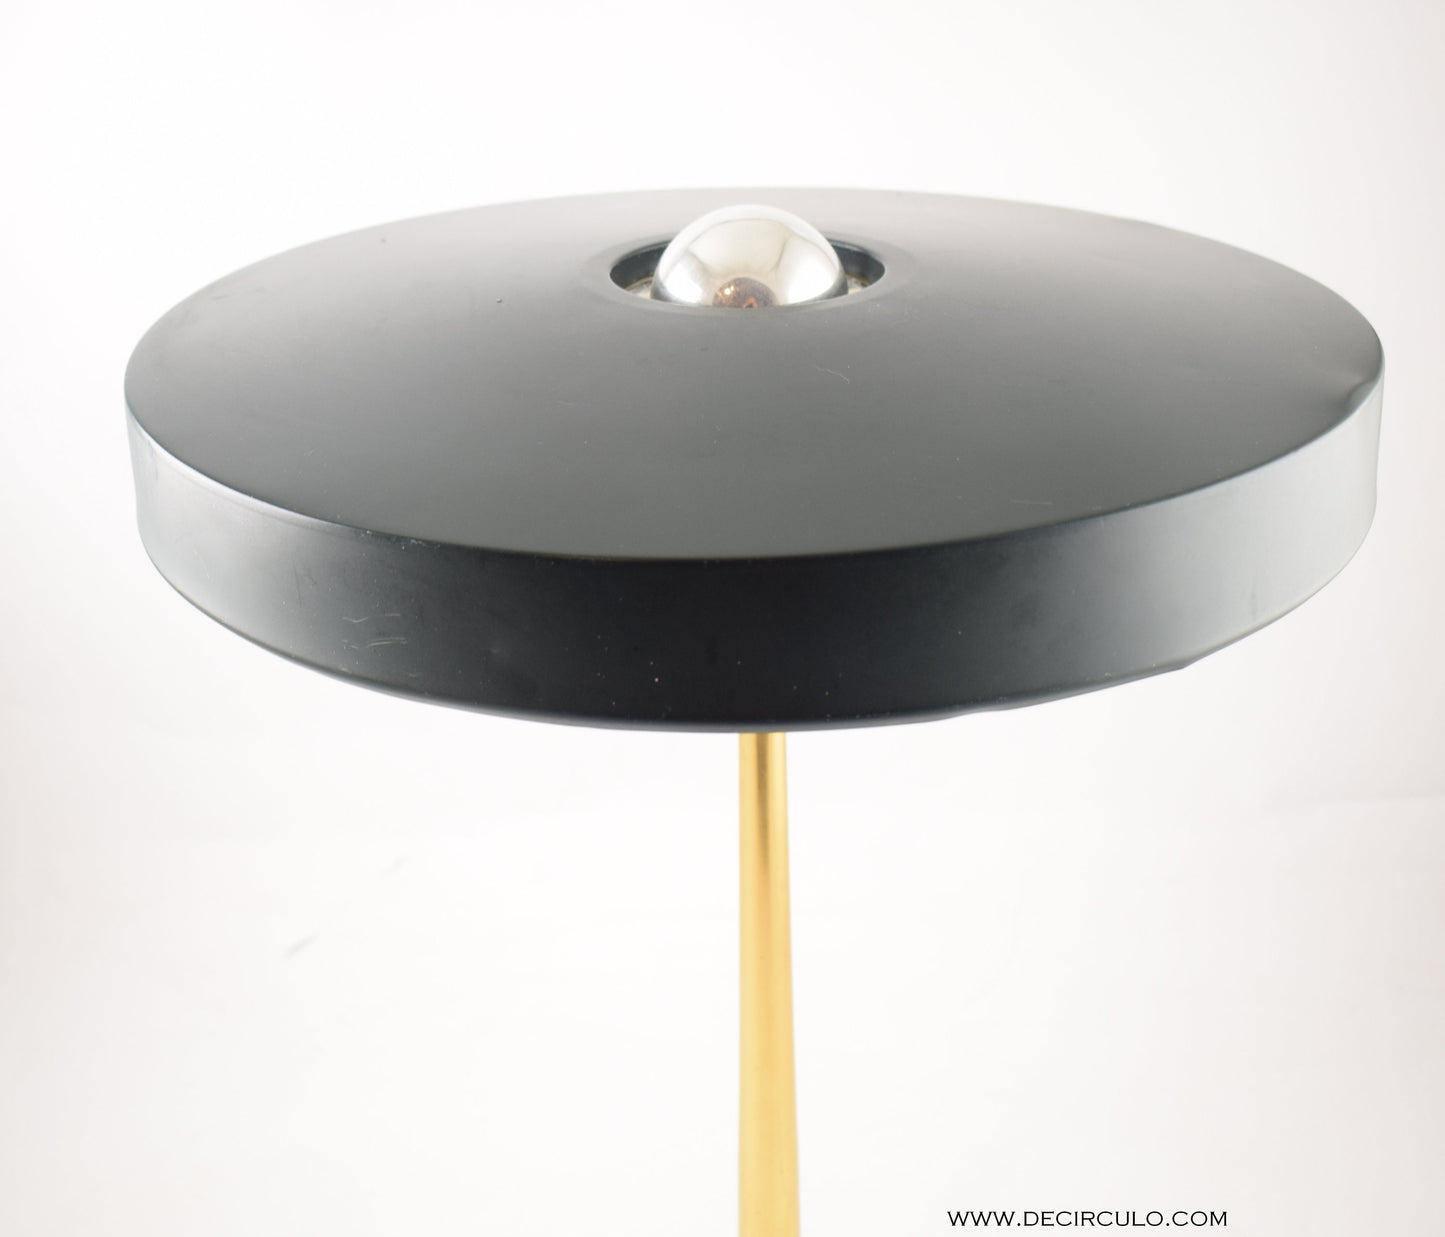 Philips mid century modern kallf timor table lamp, great design dark green olive desk lamp